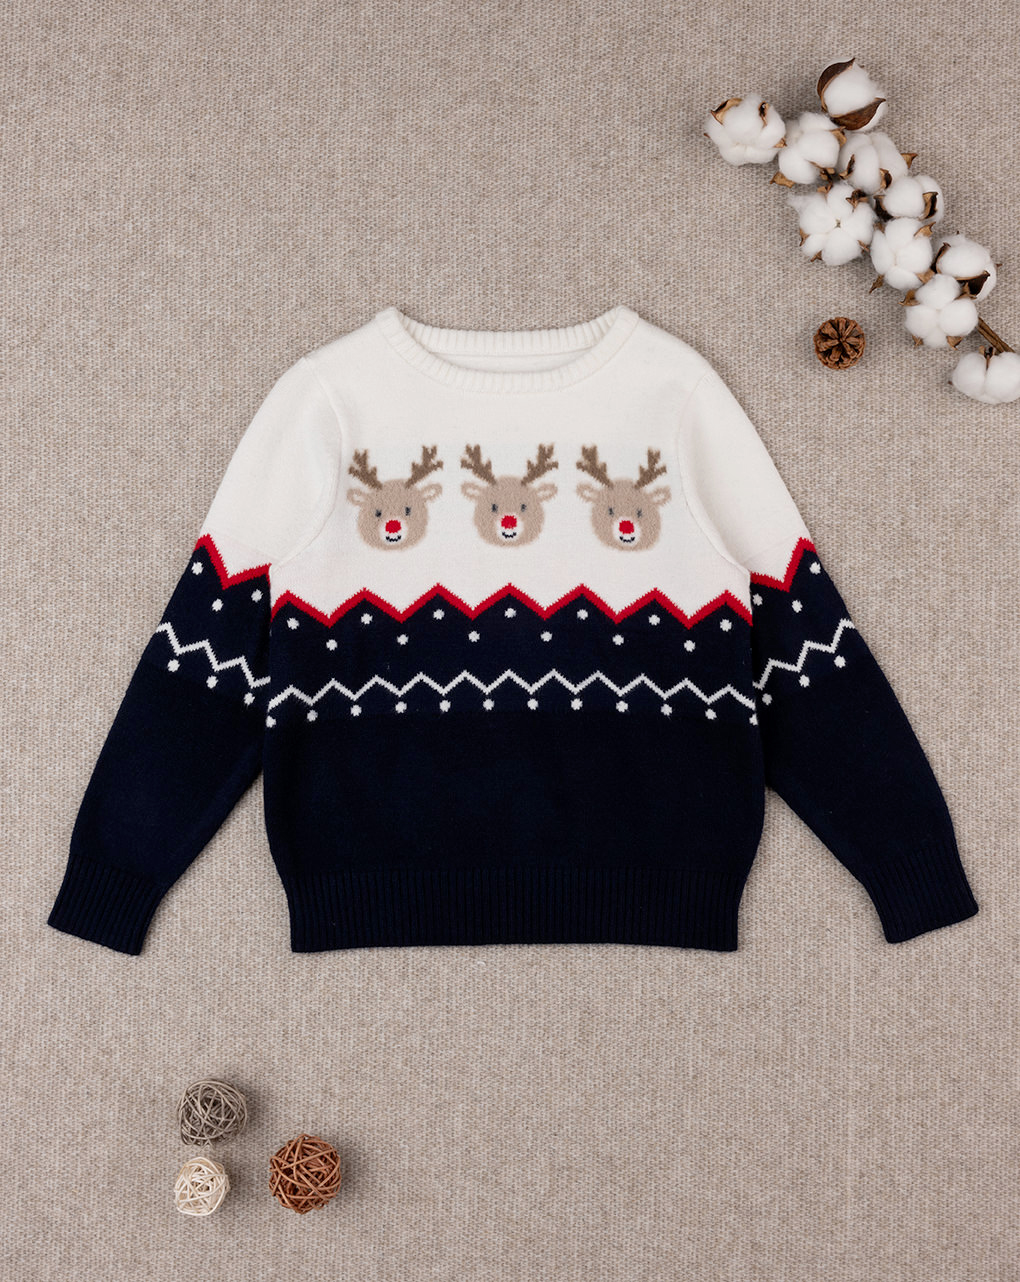 χριστουγεννιάτικο παιδικό πουλόβερ με τάρανδο για αγόρι